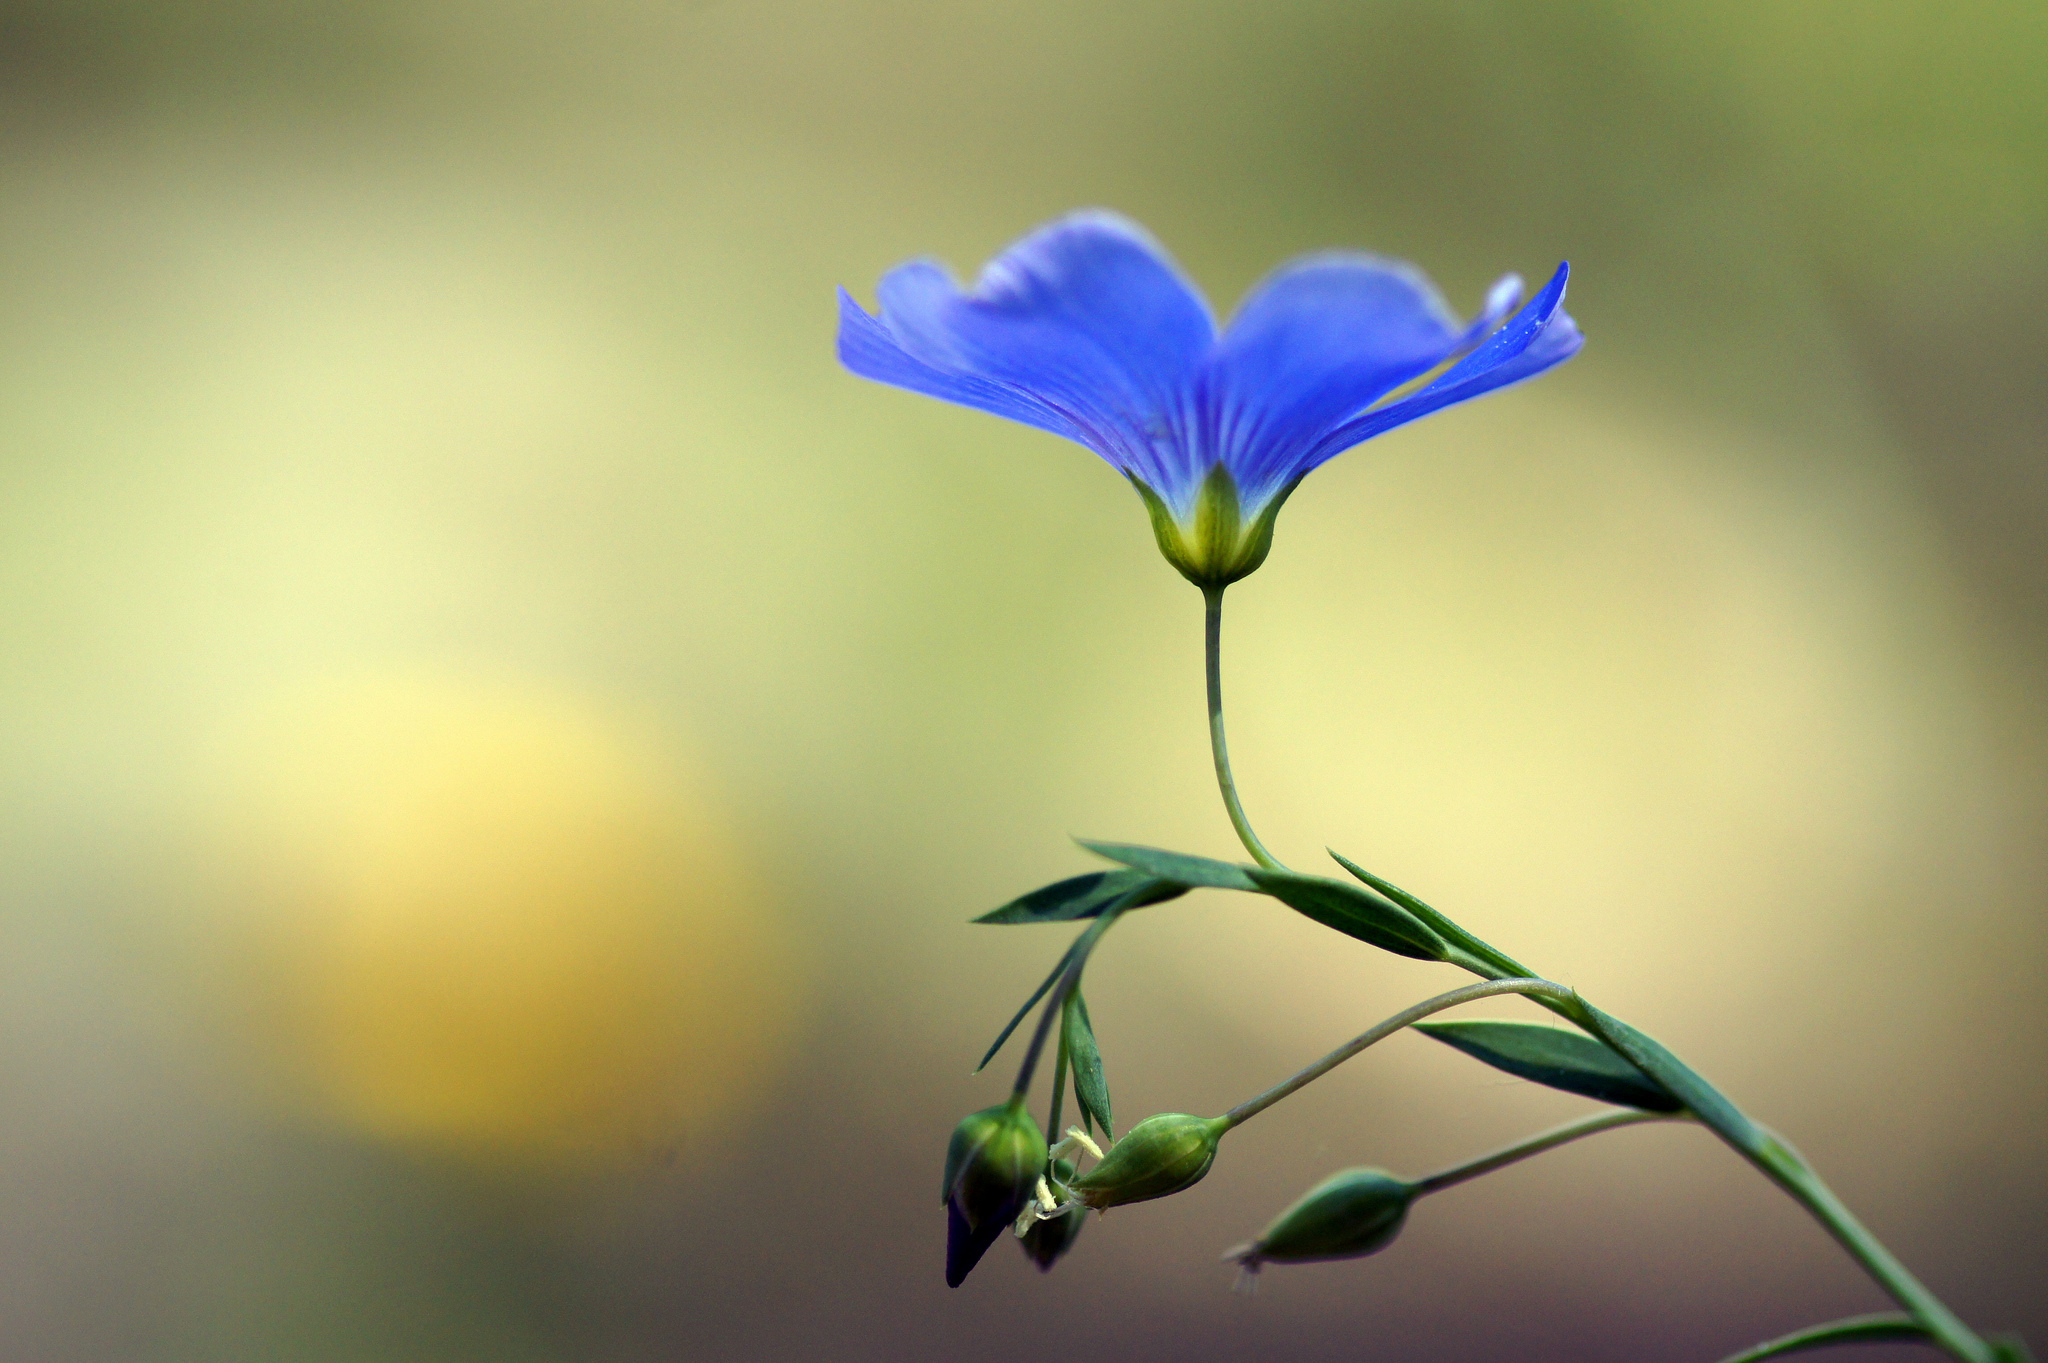 Image: Linen, flower, macro, blue